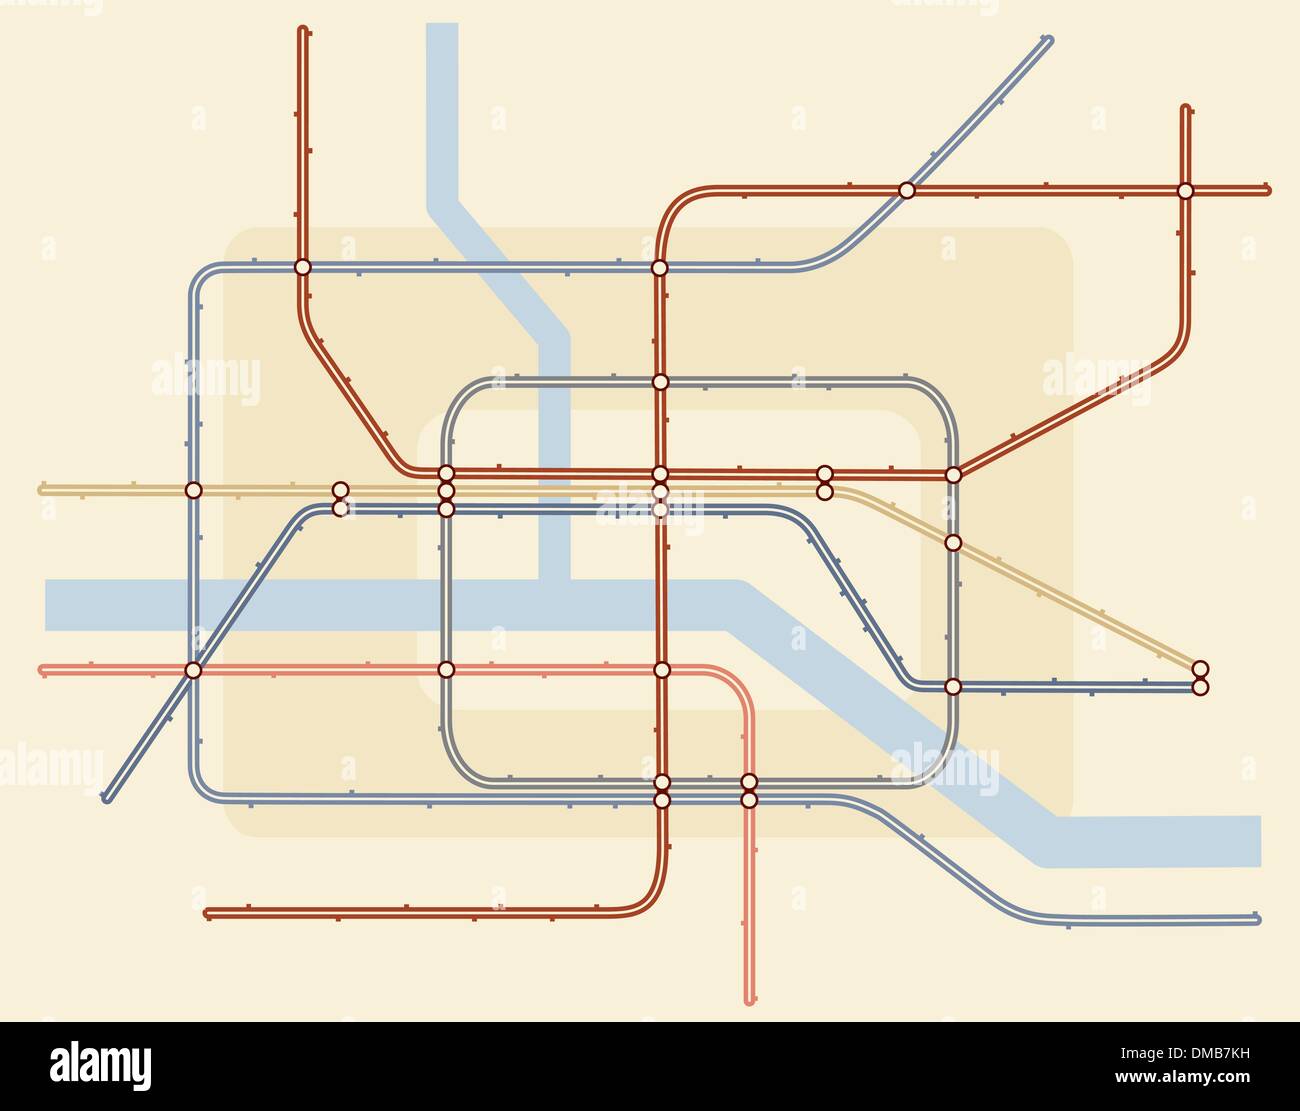 Mappa della metropolitana Illustrazione Vettoriale